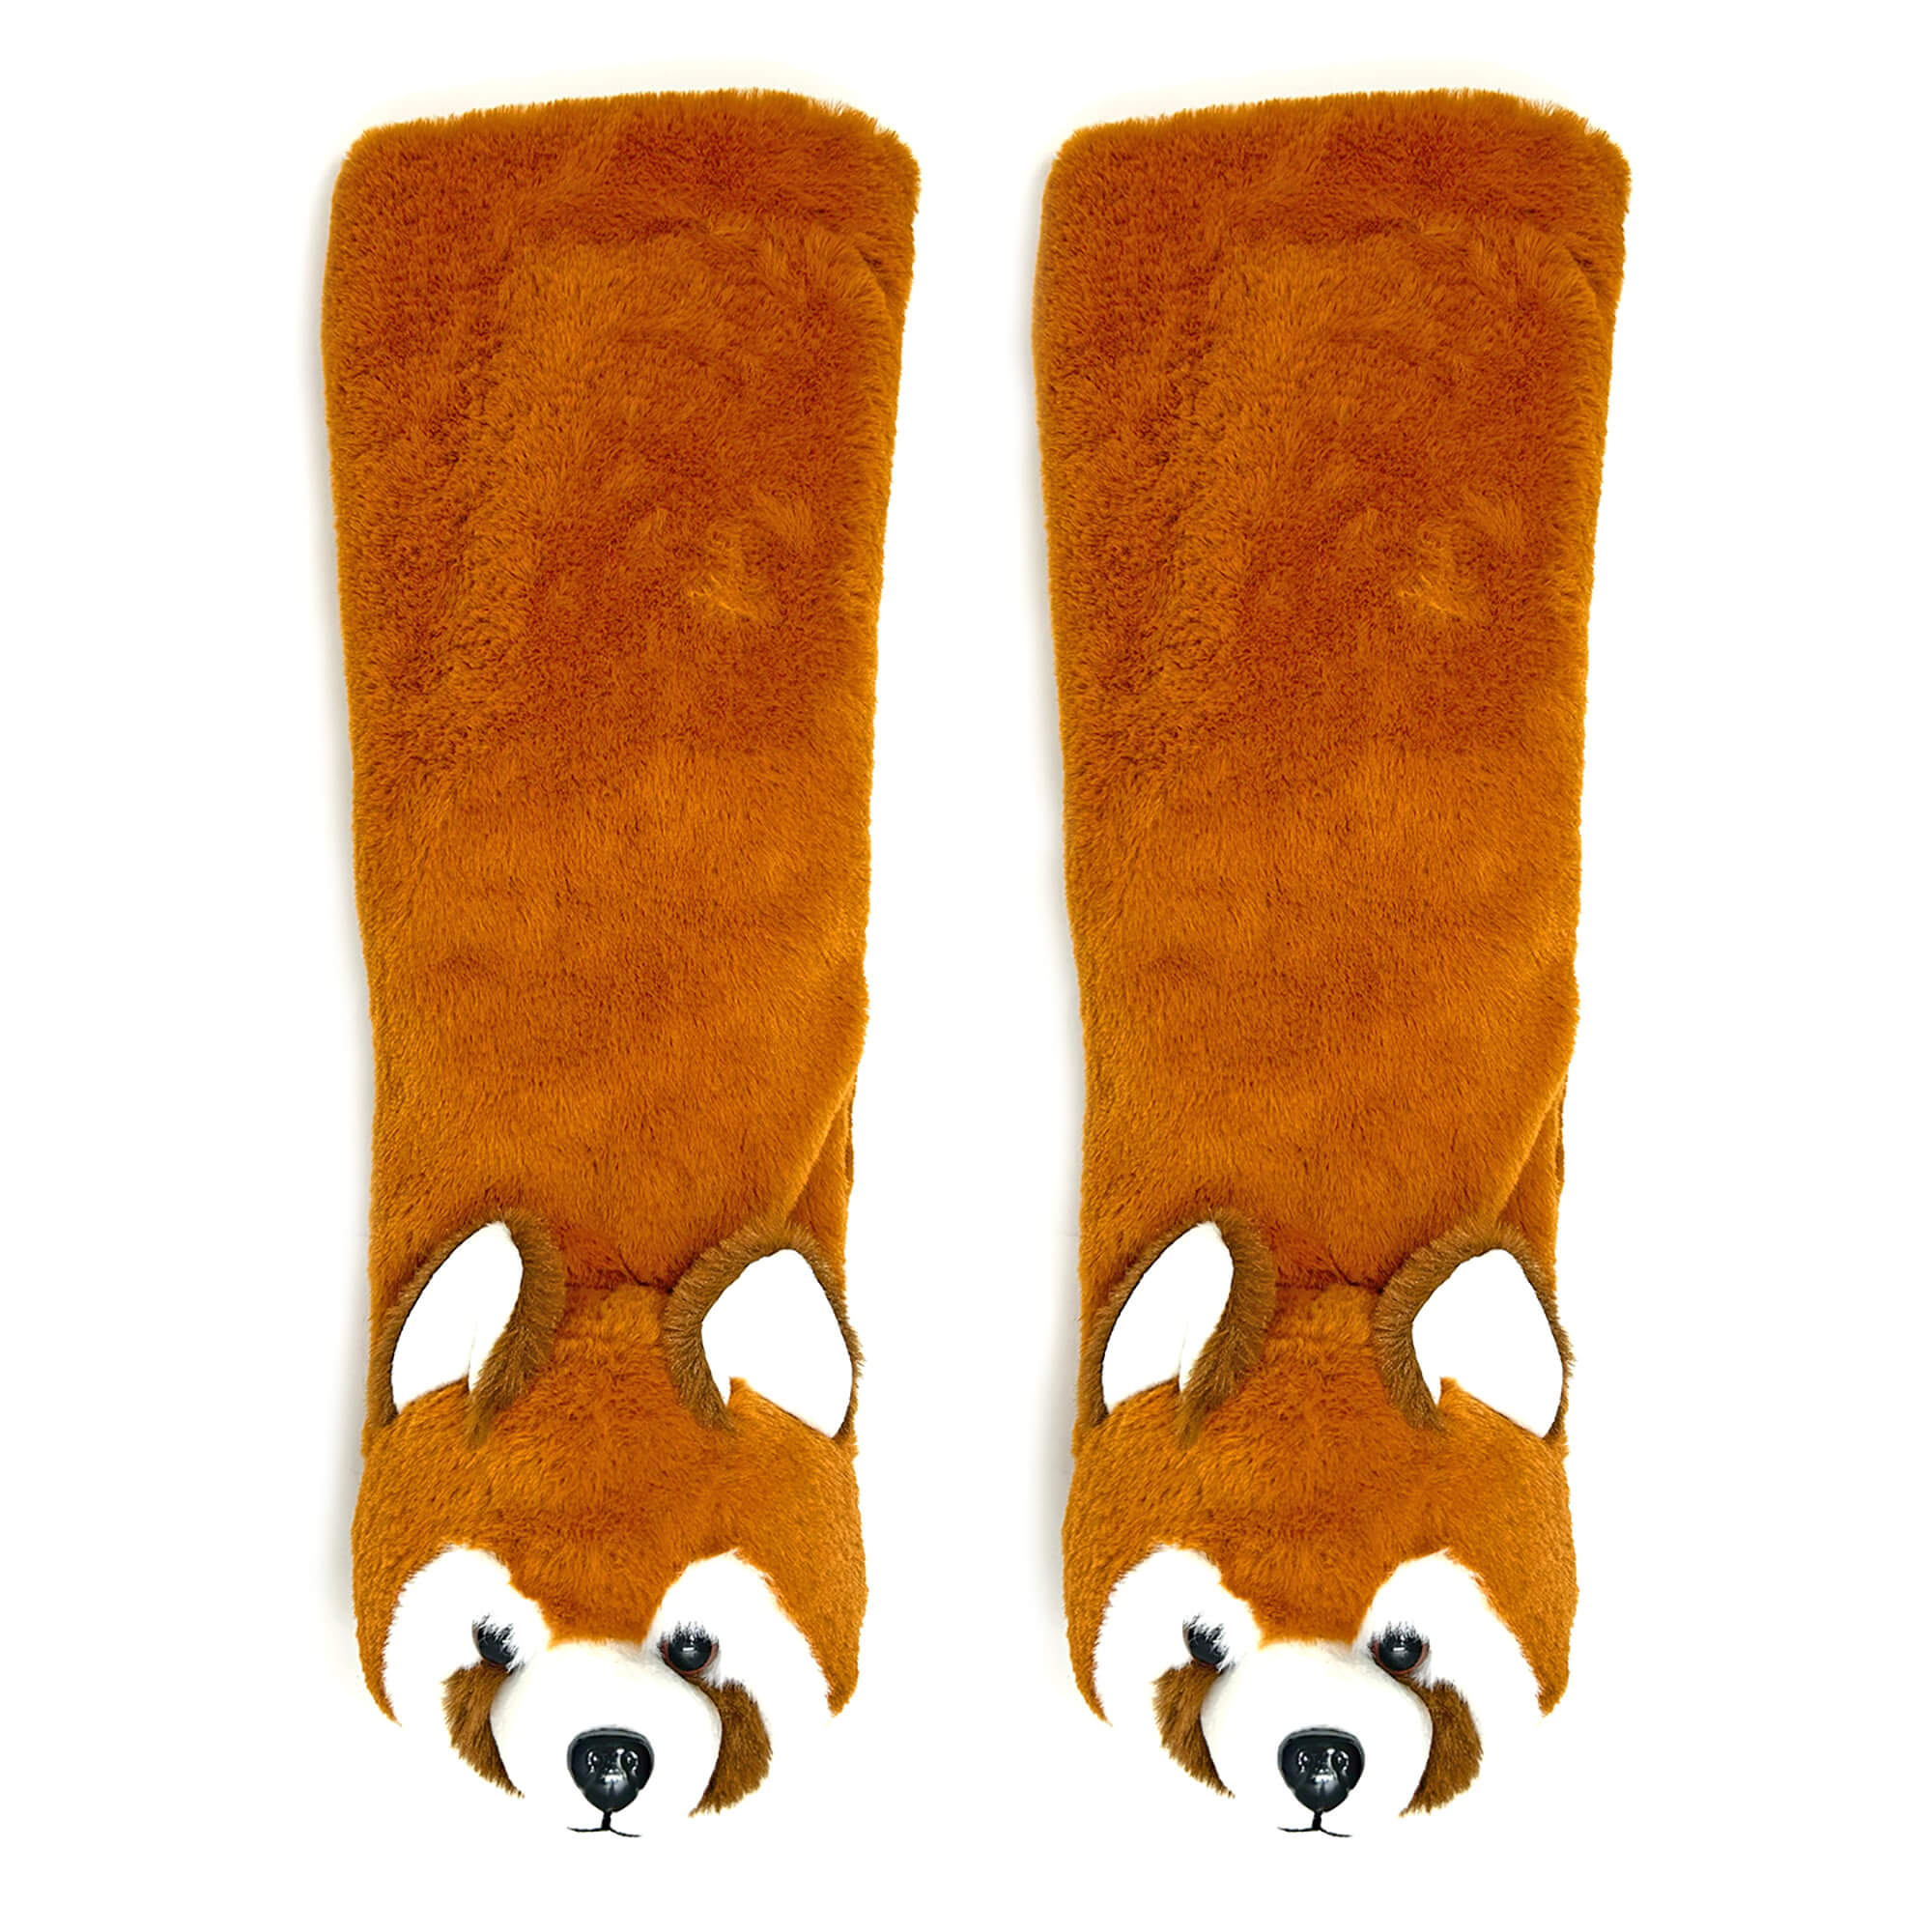 Calcetines tipo pantufla de felpa con panda rojo para niños